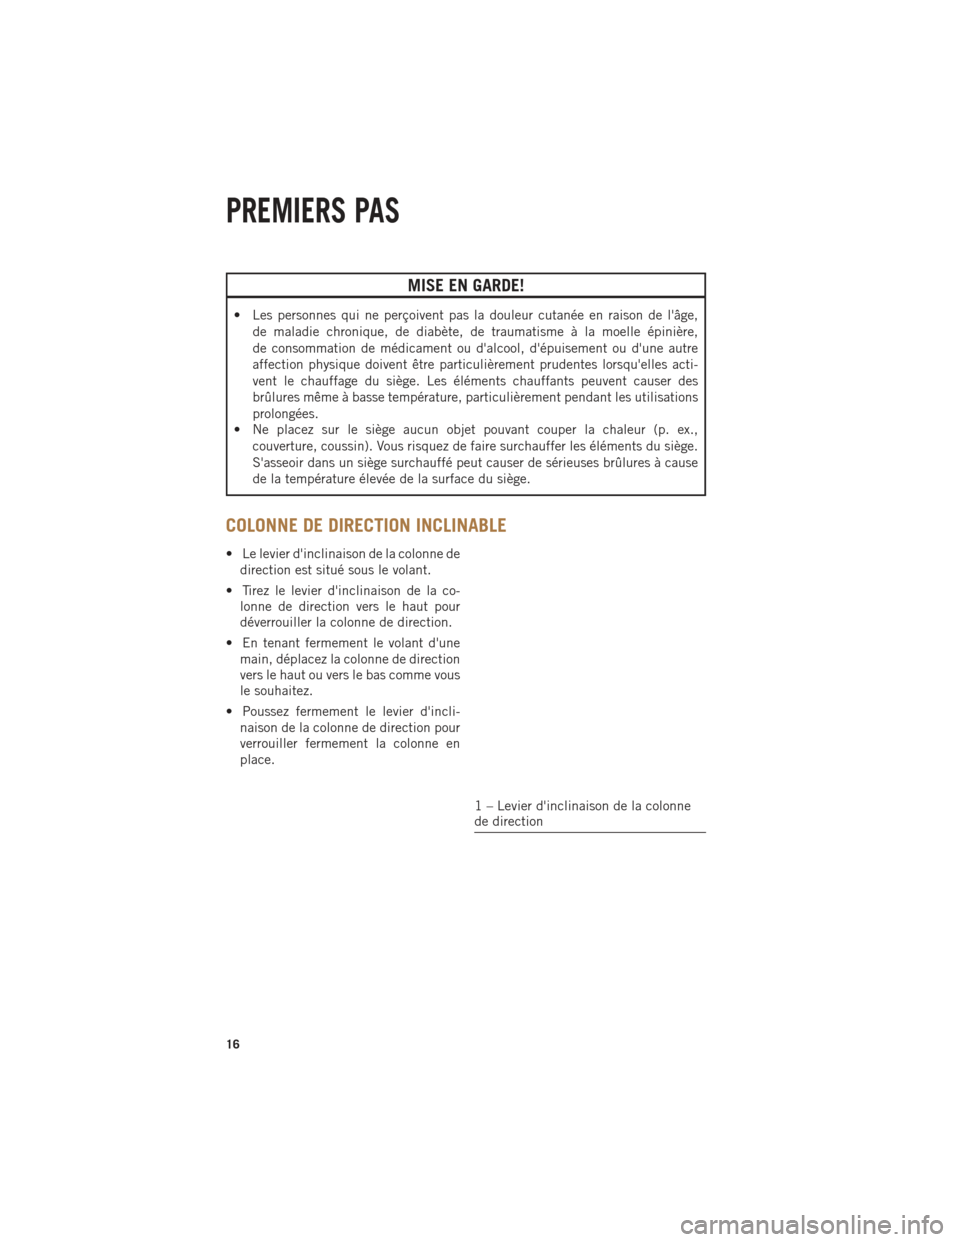 Ram ProMaster 2014  Guide dutilisateur (in French) MISE EN GARDE!
• Les personnes qui ne perçoivent pas la douleur cutanée en raison de lâge,de maladie chronique, de diabète, de traumatisme à la moelle épinière,
de consommation de médicamen